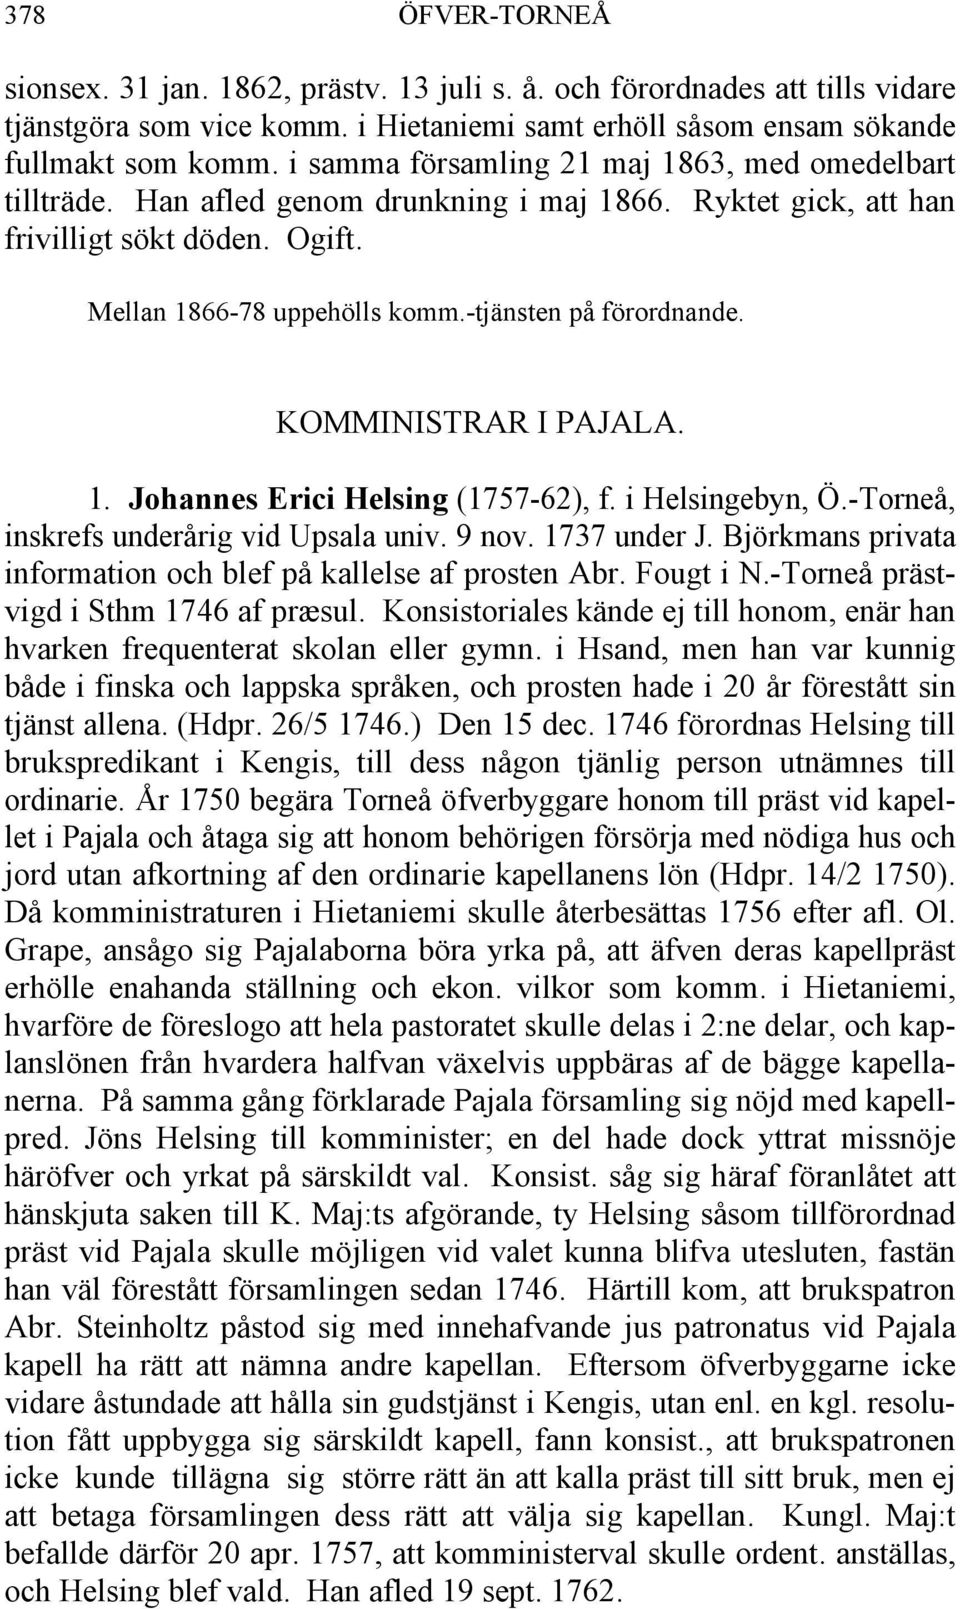 -tjänsten på förordnande. KOMMINISTRAR I PAJALA. 1. Johannes Erici Helsing (1757-62), f. i Helsingebyn, Ö.-Torneå, inskrefs underårig vid Upsala univ. 9 nov. 1737 under J.